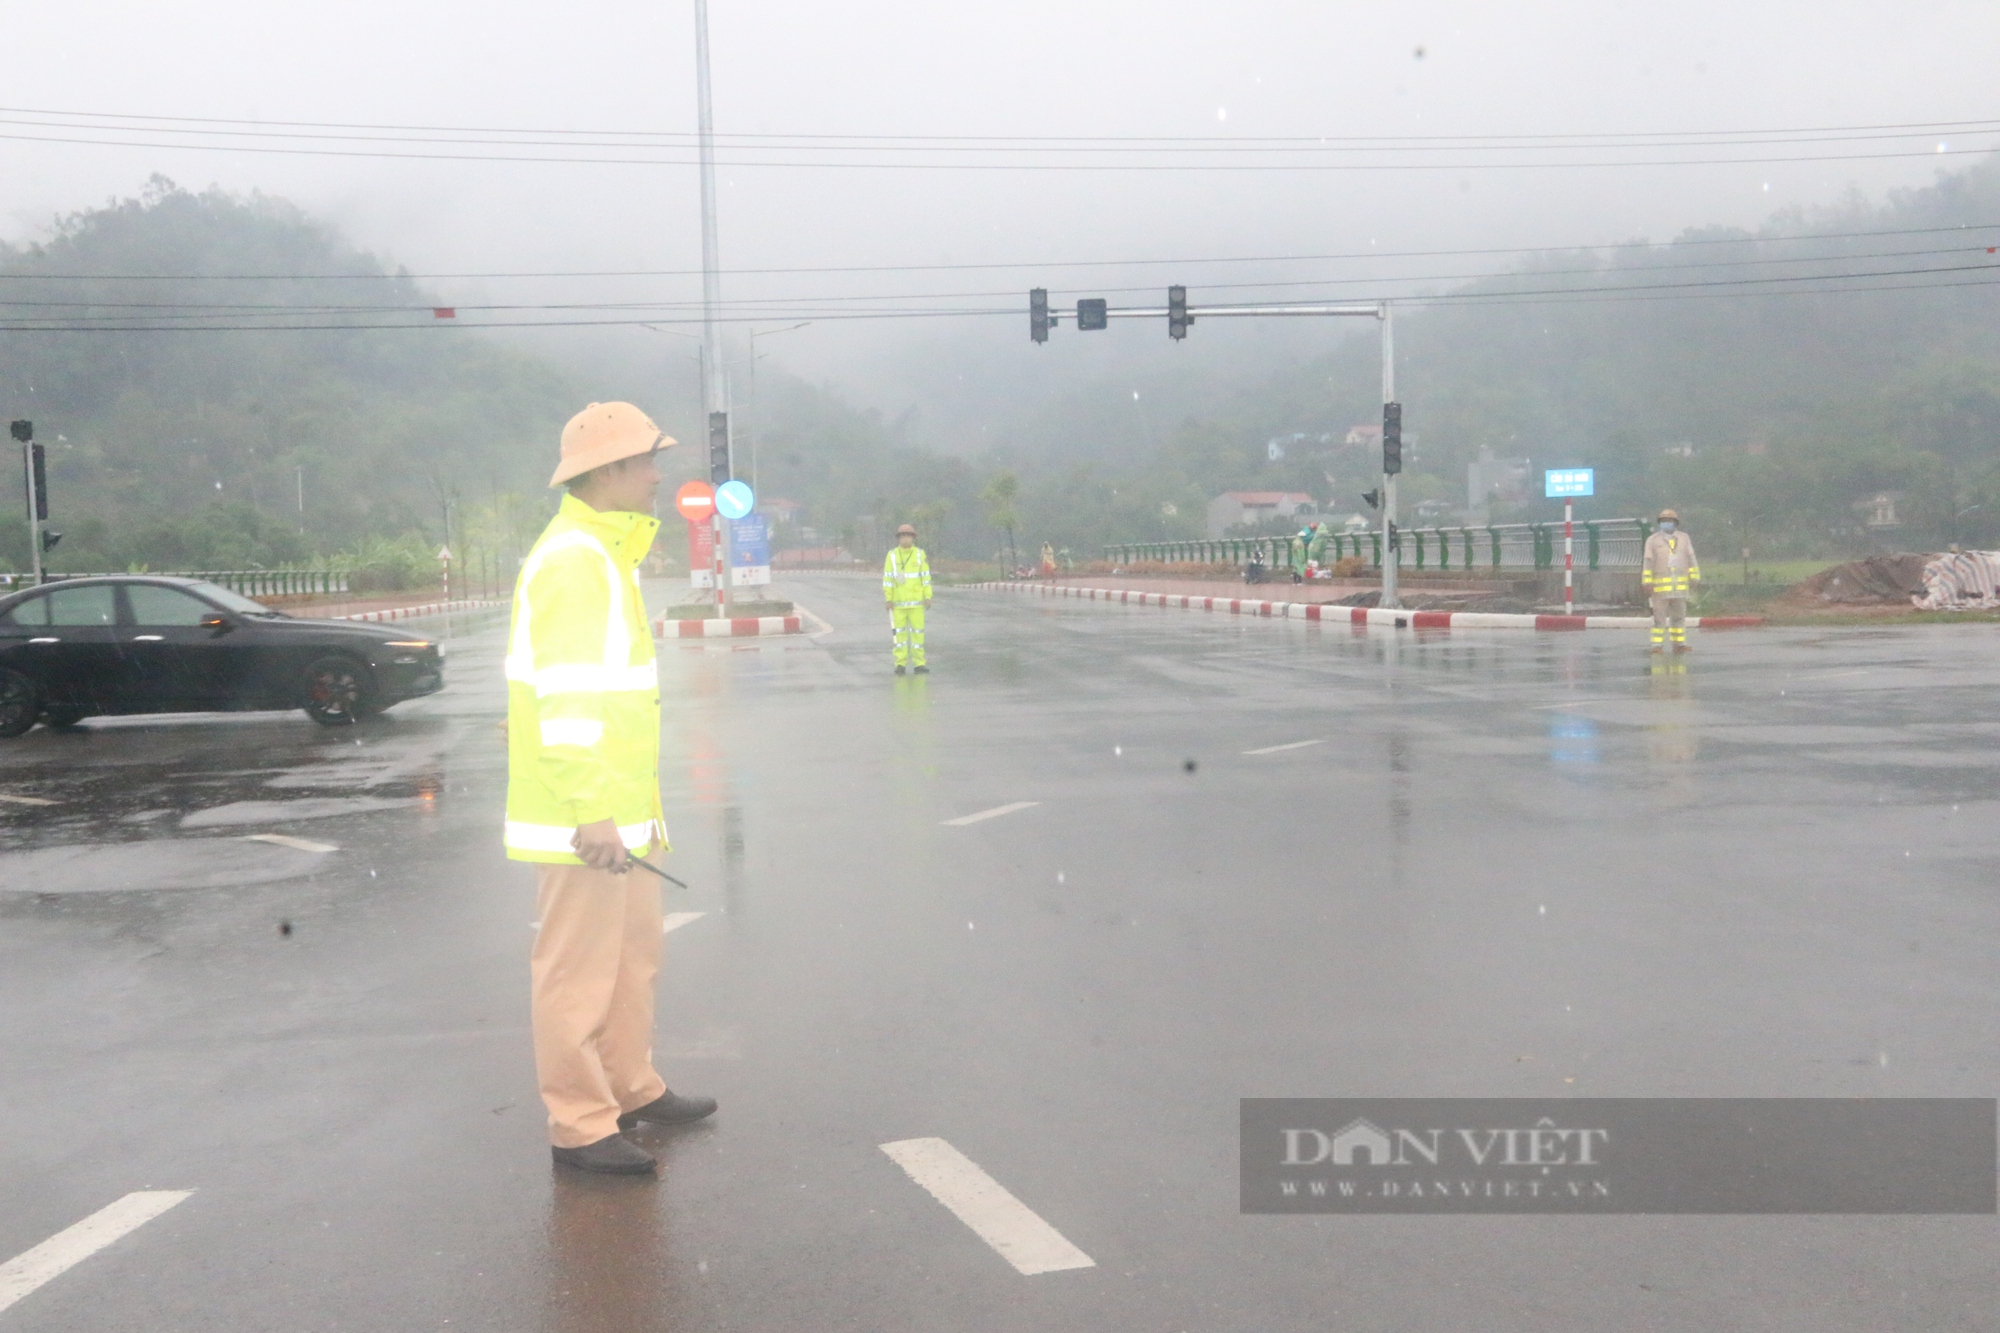  Chùm ảnh: Lực lượng CSGT Hoà Bình đầm mưa phân luồng giao thông phục vụ  - Ảnh 1.